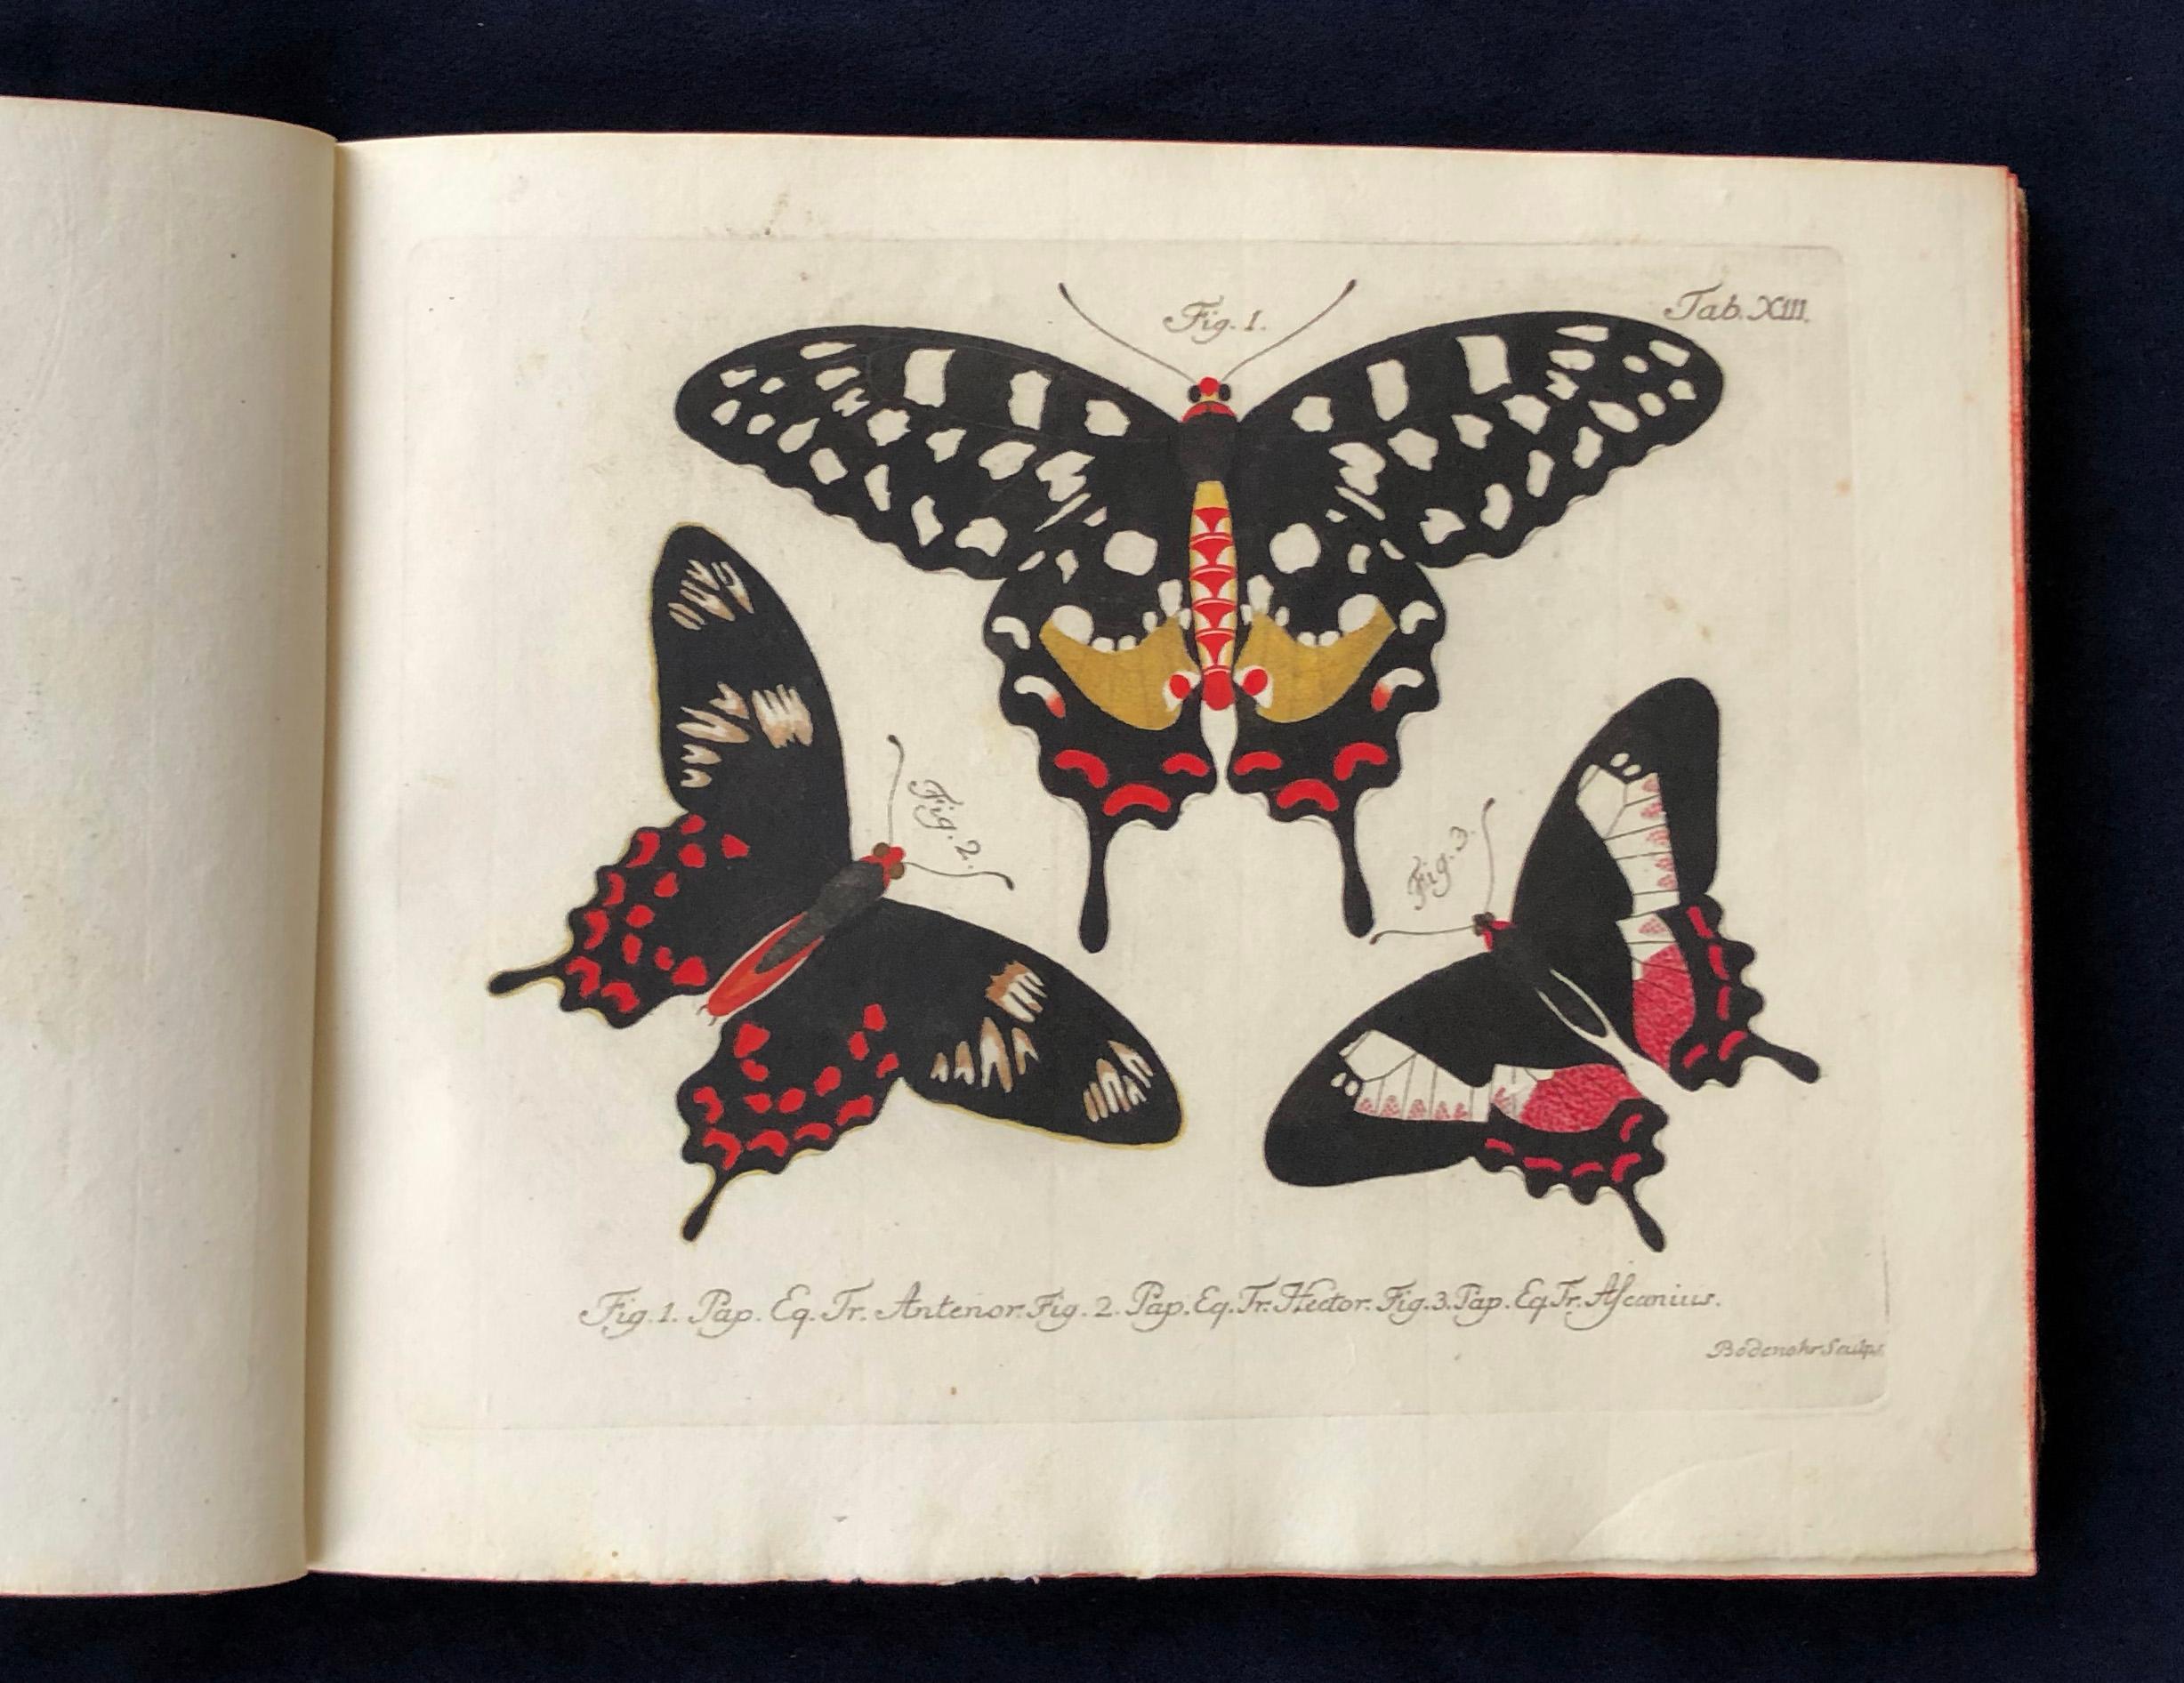 Schmetterlinge 'Butterflies' by Carl Gustav Jablonsky  & J.F.W. Herbst In Good Condition For Sale In Middletown, NY